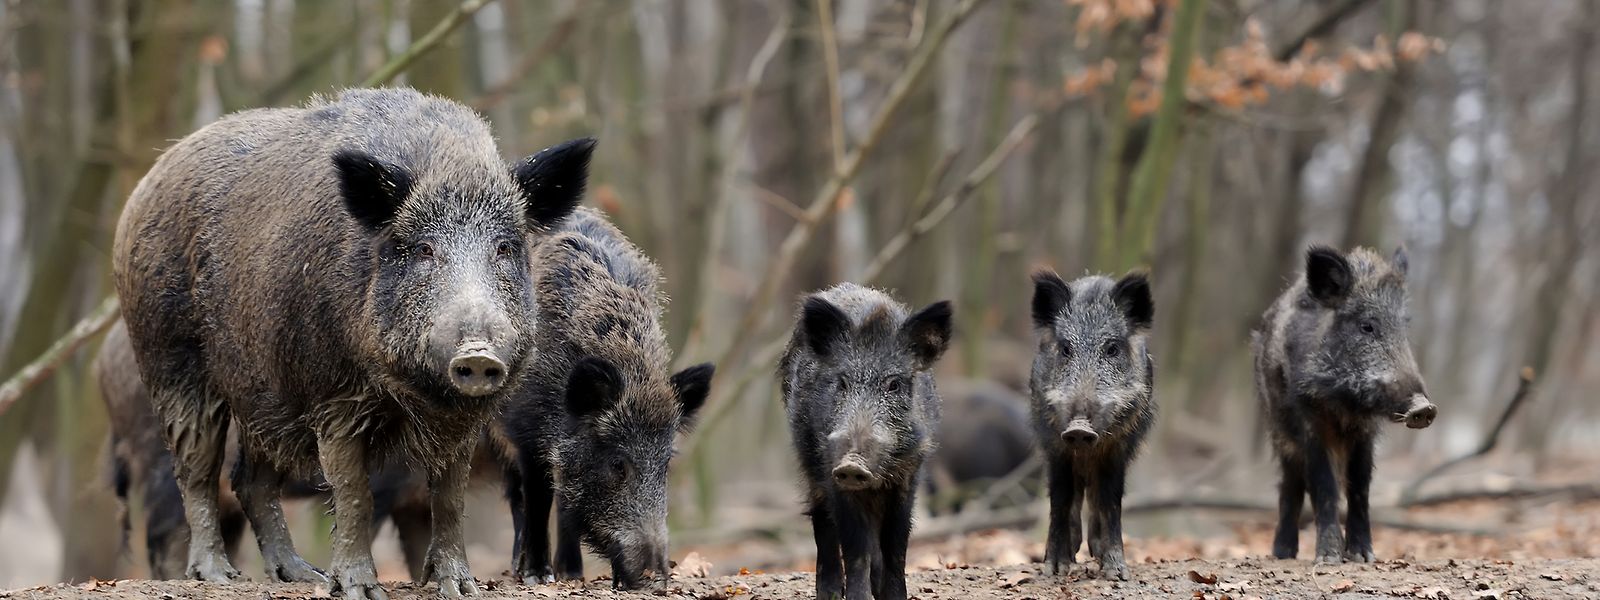 Die Reproduktionsrate liegt bei etwa 250 Prozent. Wo heute 100 Wildschweine leben, wären es ohne Jagd im Folgejahr 350 Tiere.